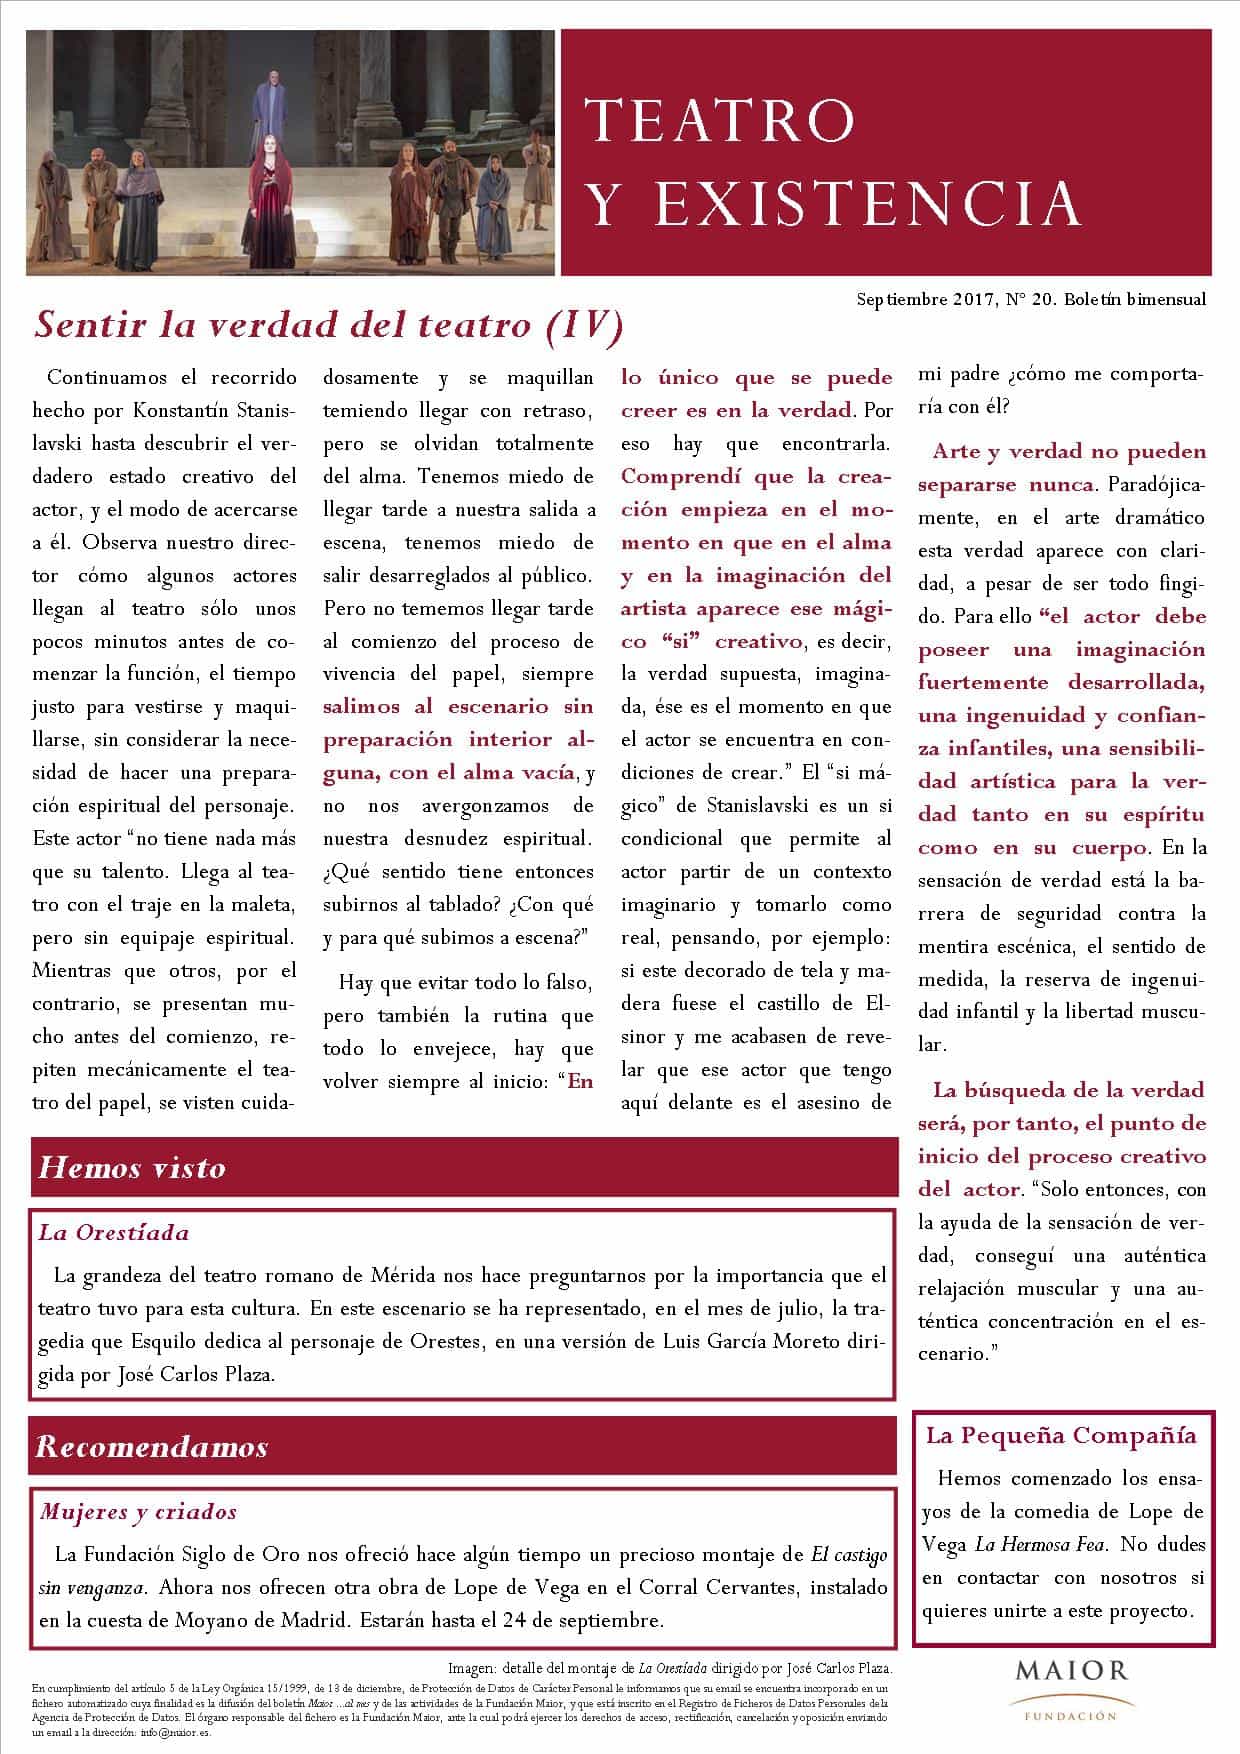 Boletín de Teatro y Existencia de La Pequeña Compañía de la Fundación Maior, con recomendaciones de la cartelera. Edición de Septiembre 2017